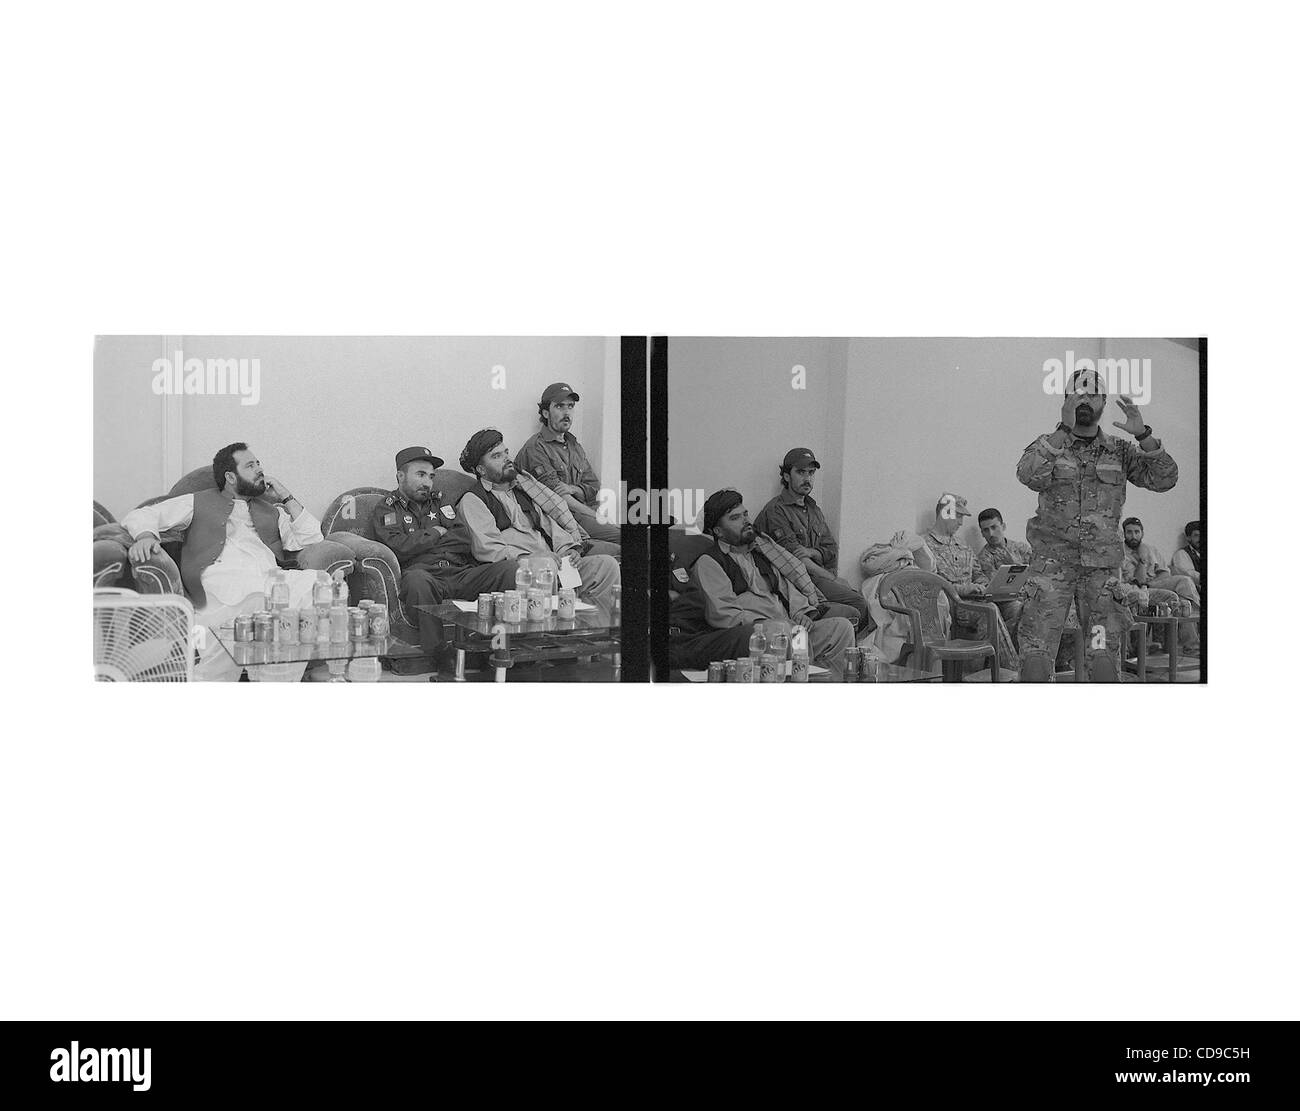 Jul 01, 2010 - Paktika, Afghanistan - funzionari del governo afgano e della polizia nazionale di ascoltare un commando afghani parlare a shura o riunione con gli anziani delle tribù. (Credito Immagine: © Bill Putnam/ZUMAPRESS.com) Foto Stock